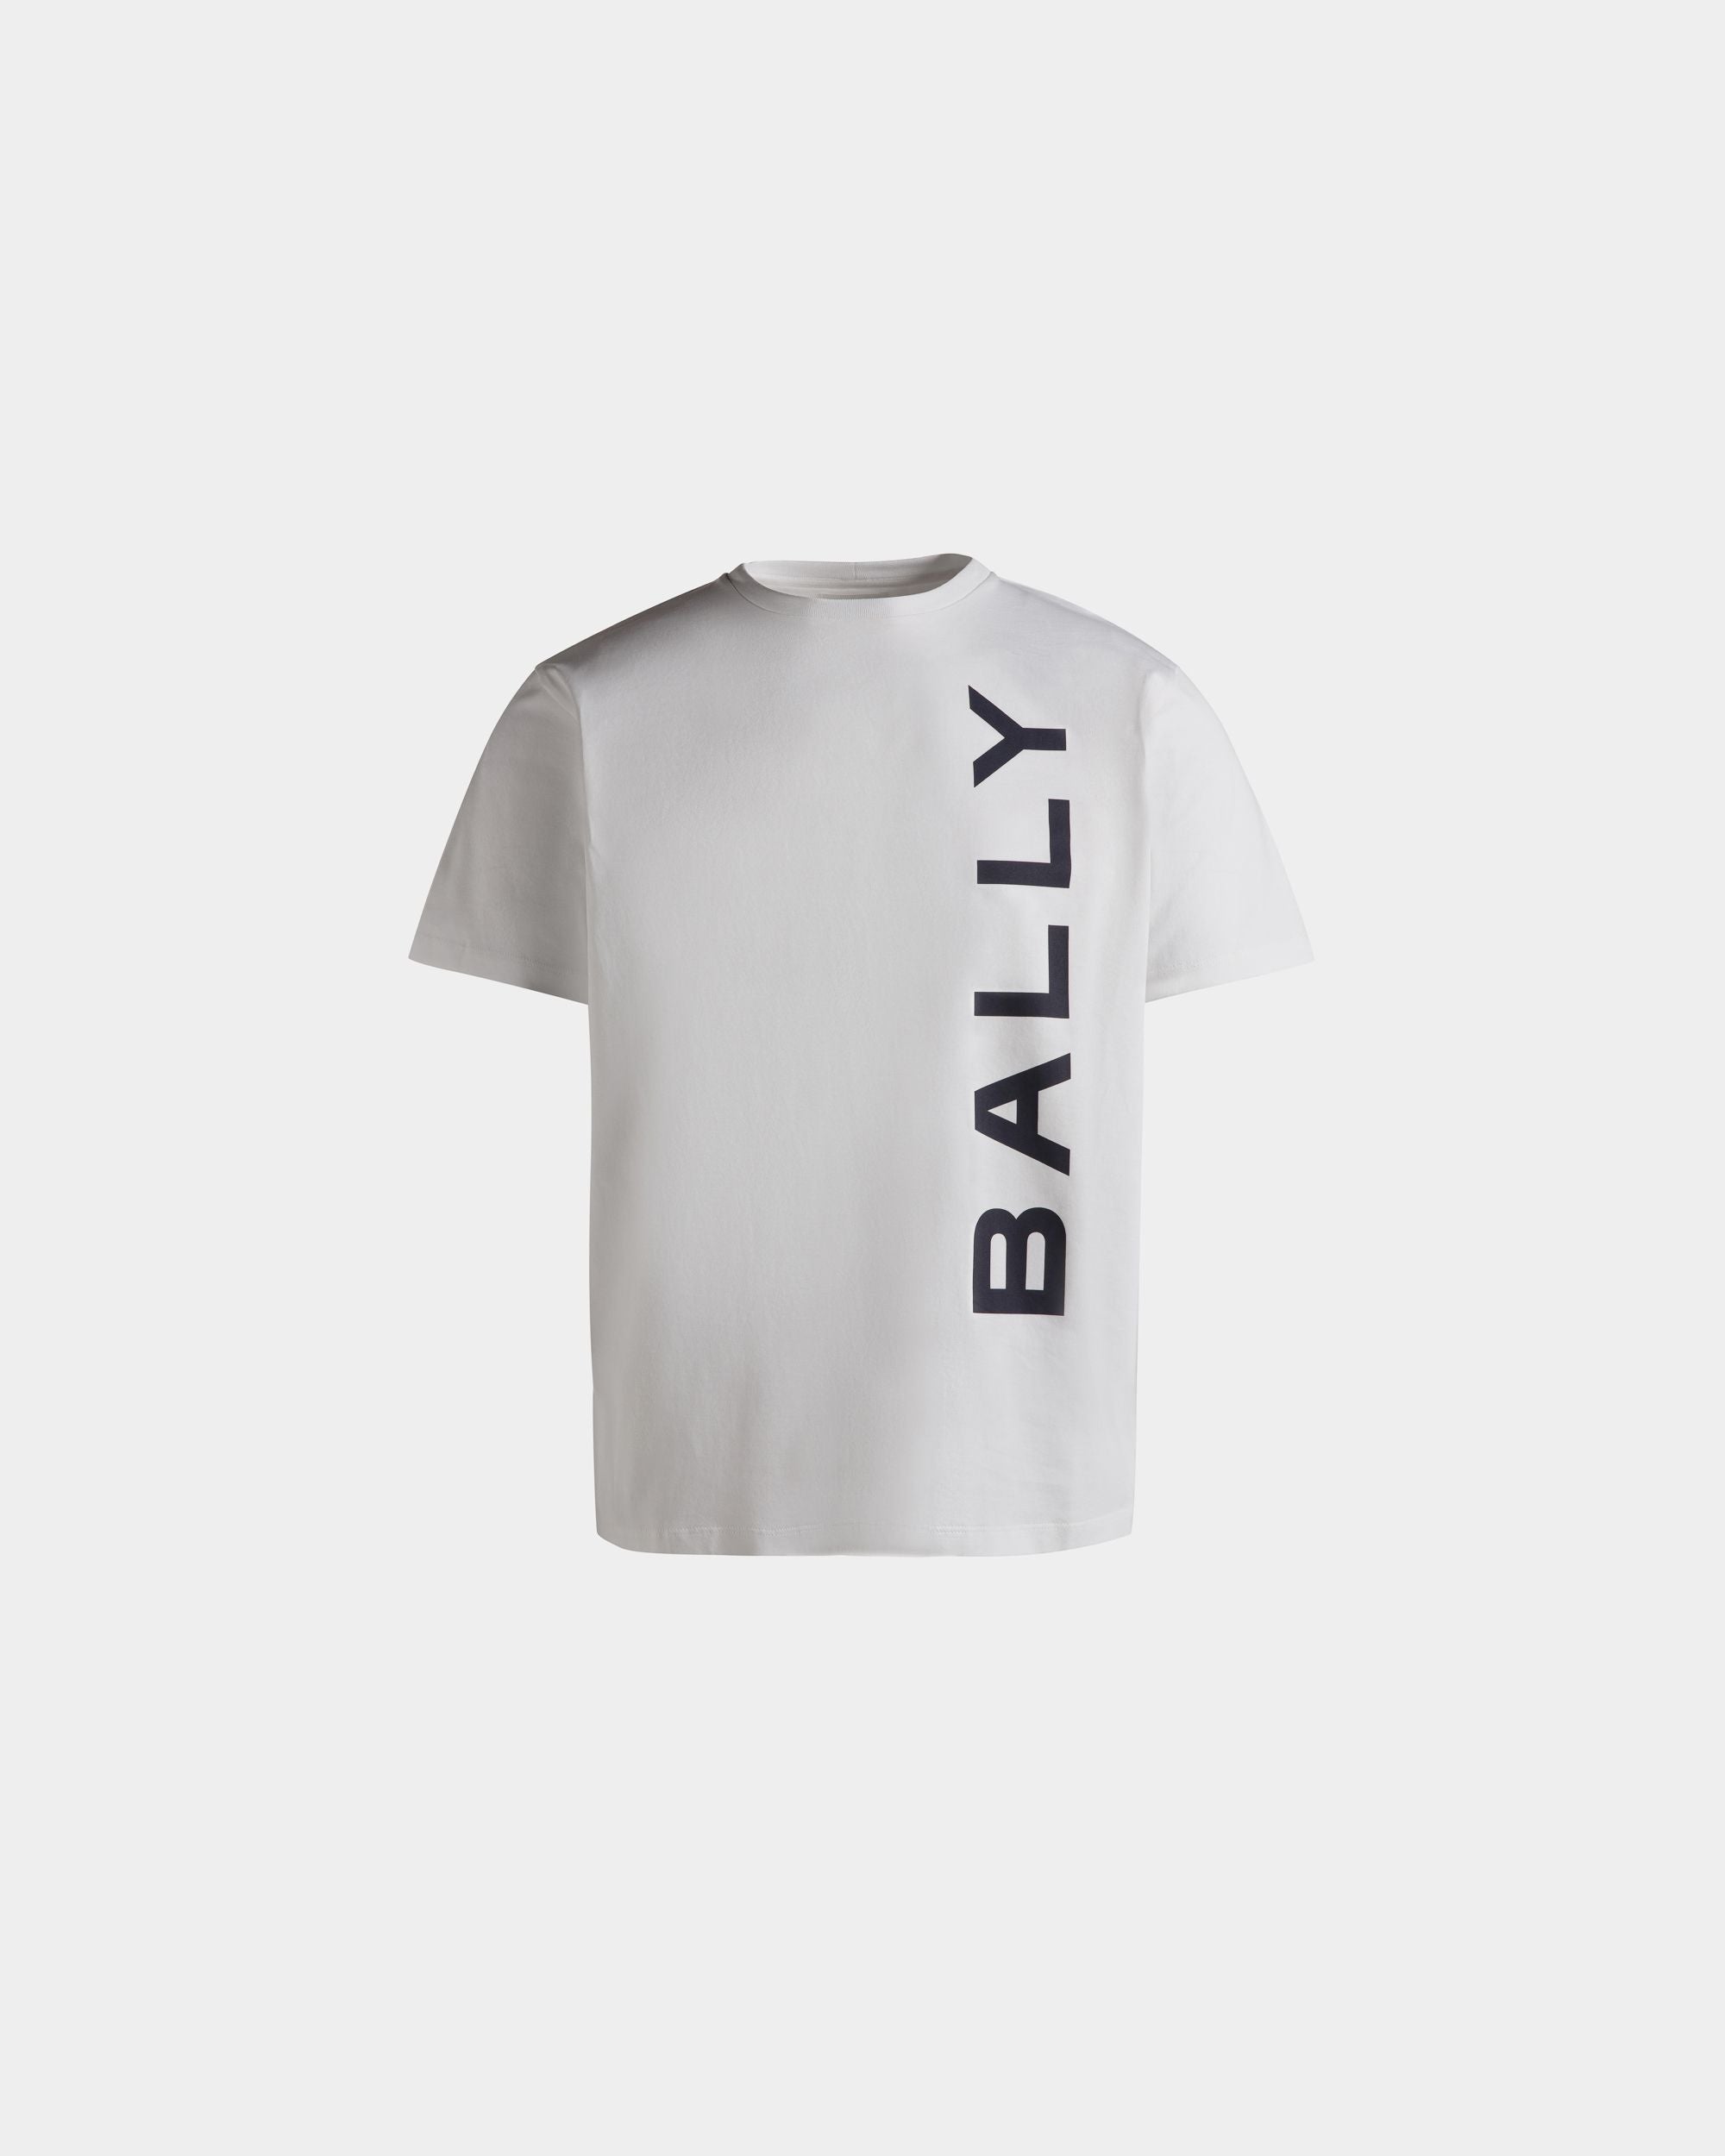 Herren-T-Shirt aus weißer Baumwolle | Bally | Still Life Vorderseite